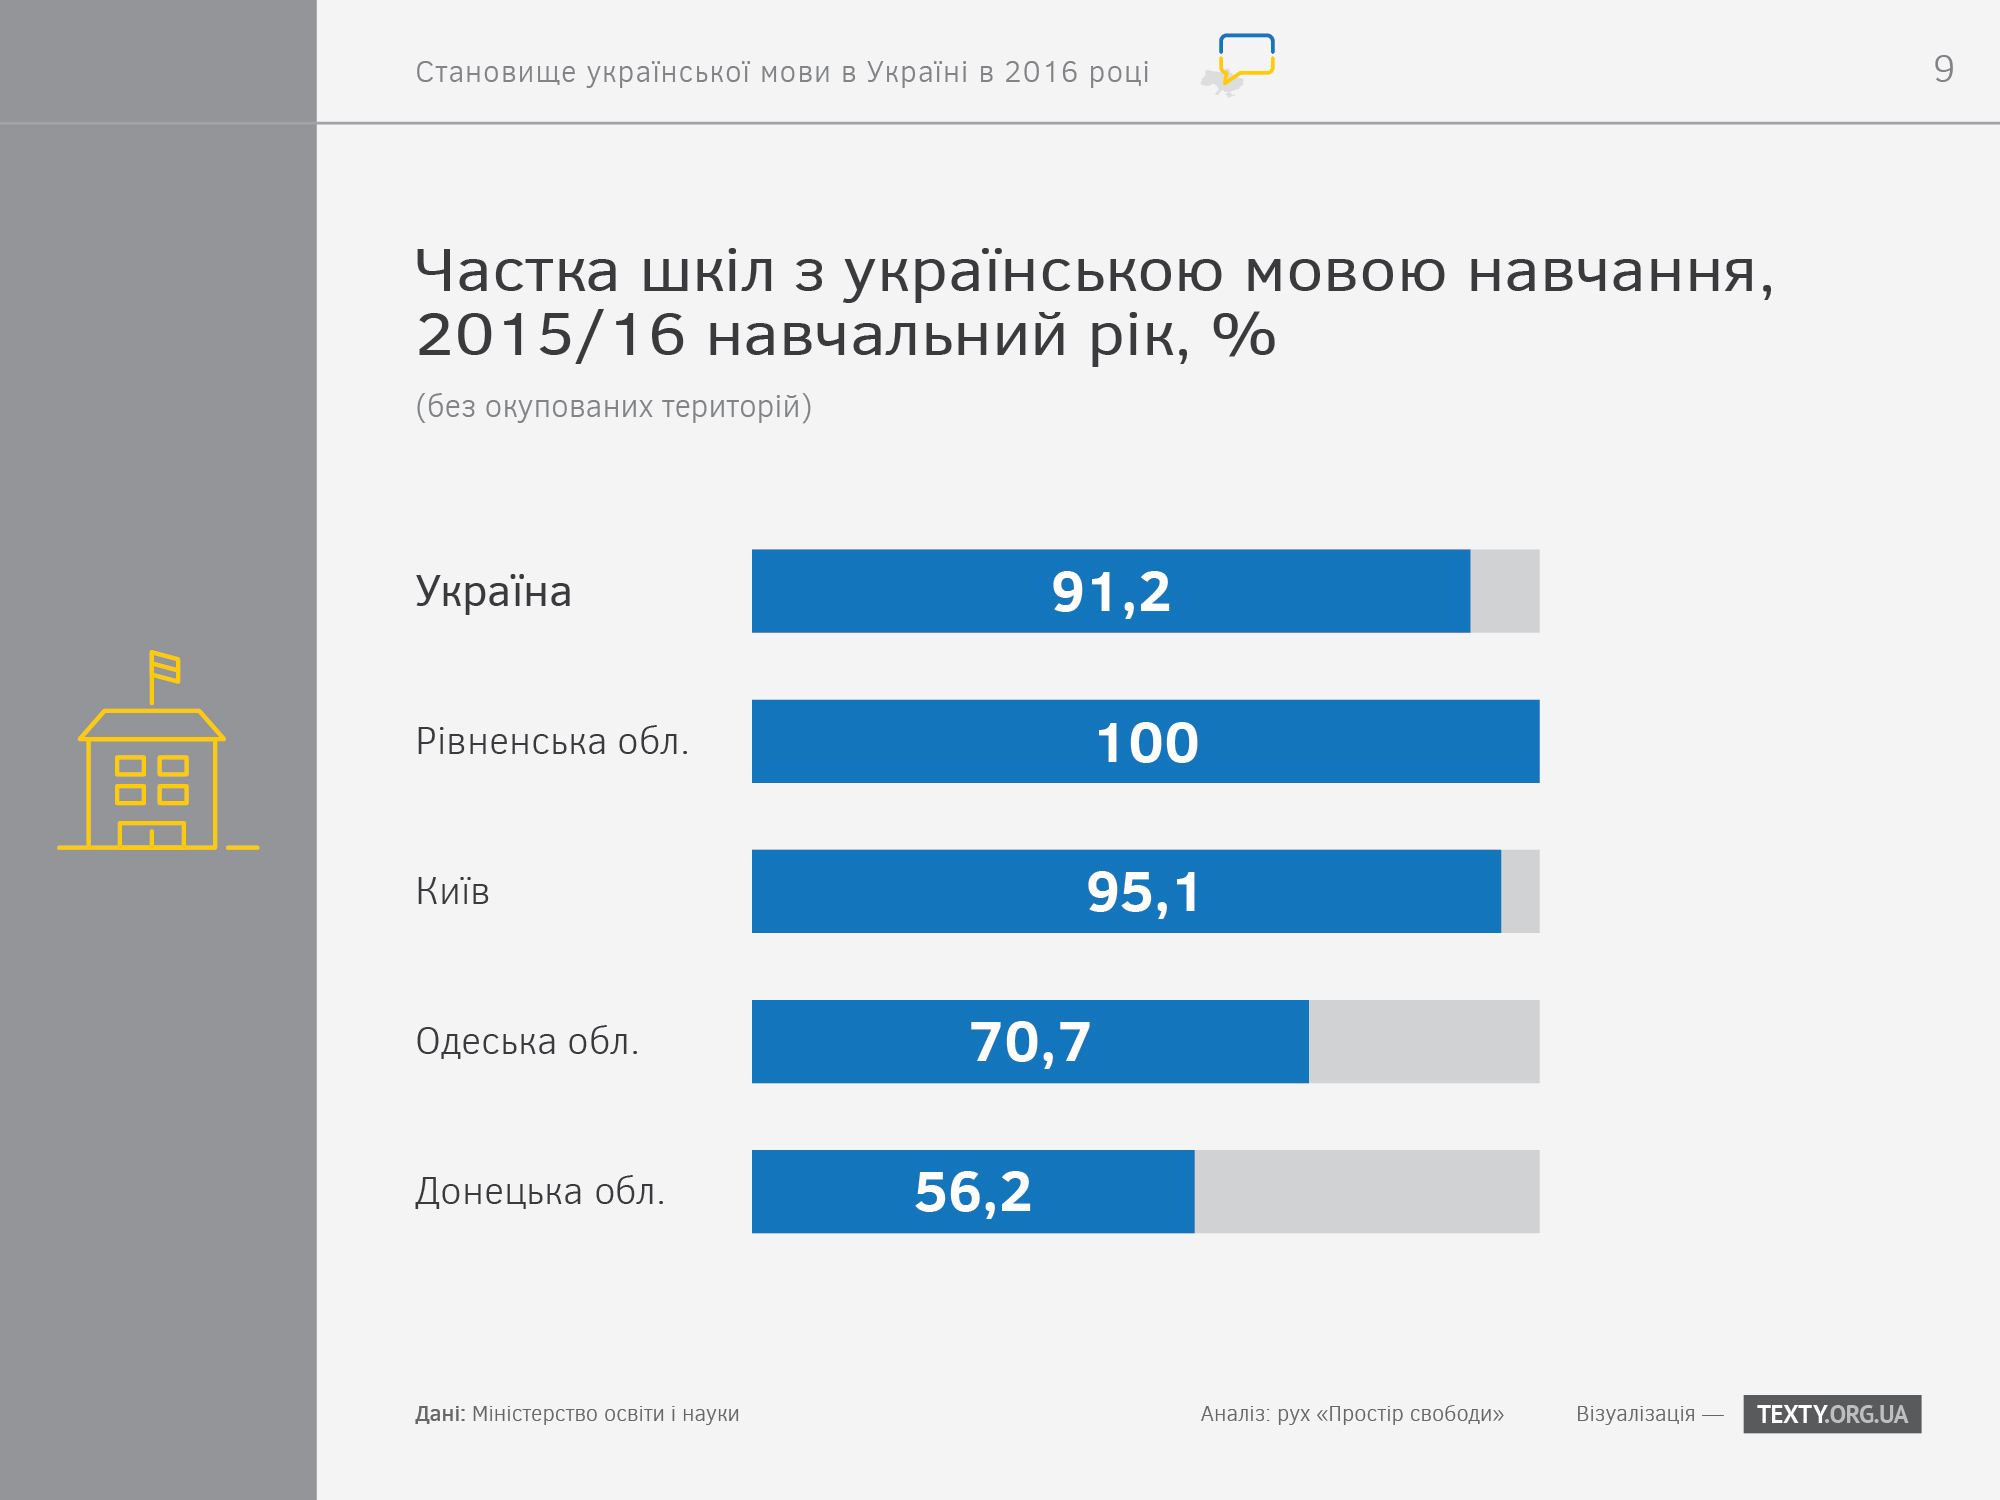 ukrayinska-mova-v-osviti-2-infografika